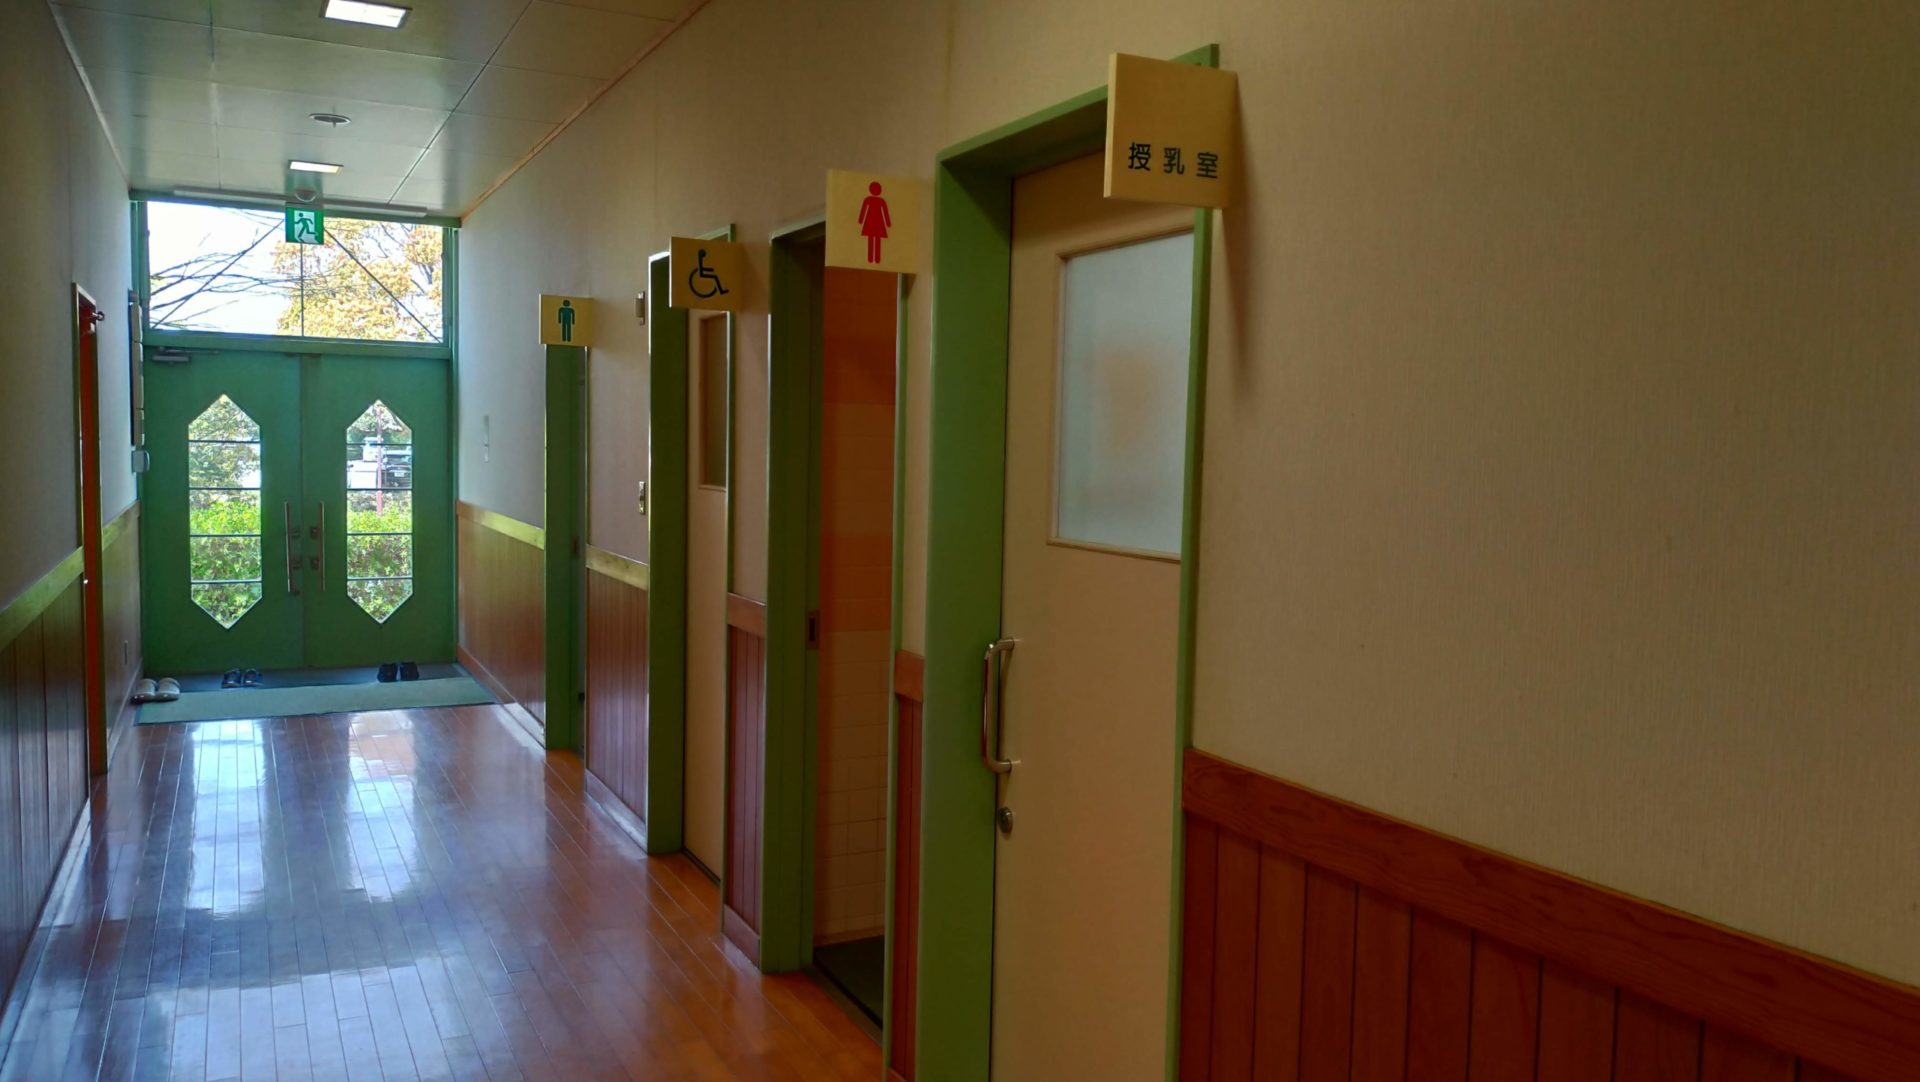 わんぱく童夢館には、１Fに授乳室があります。